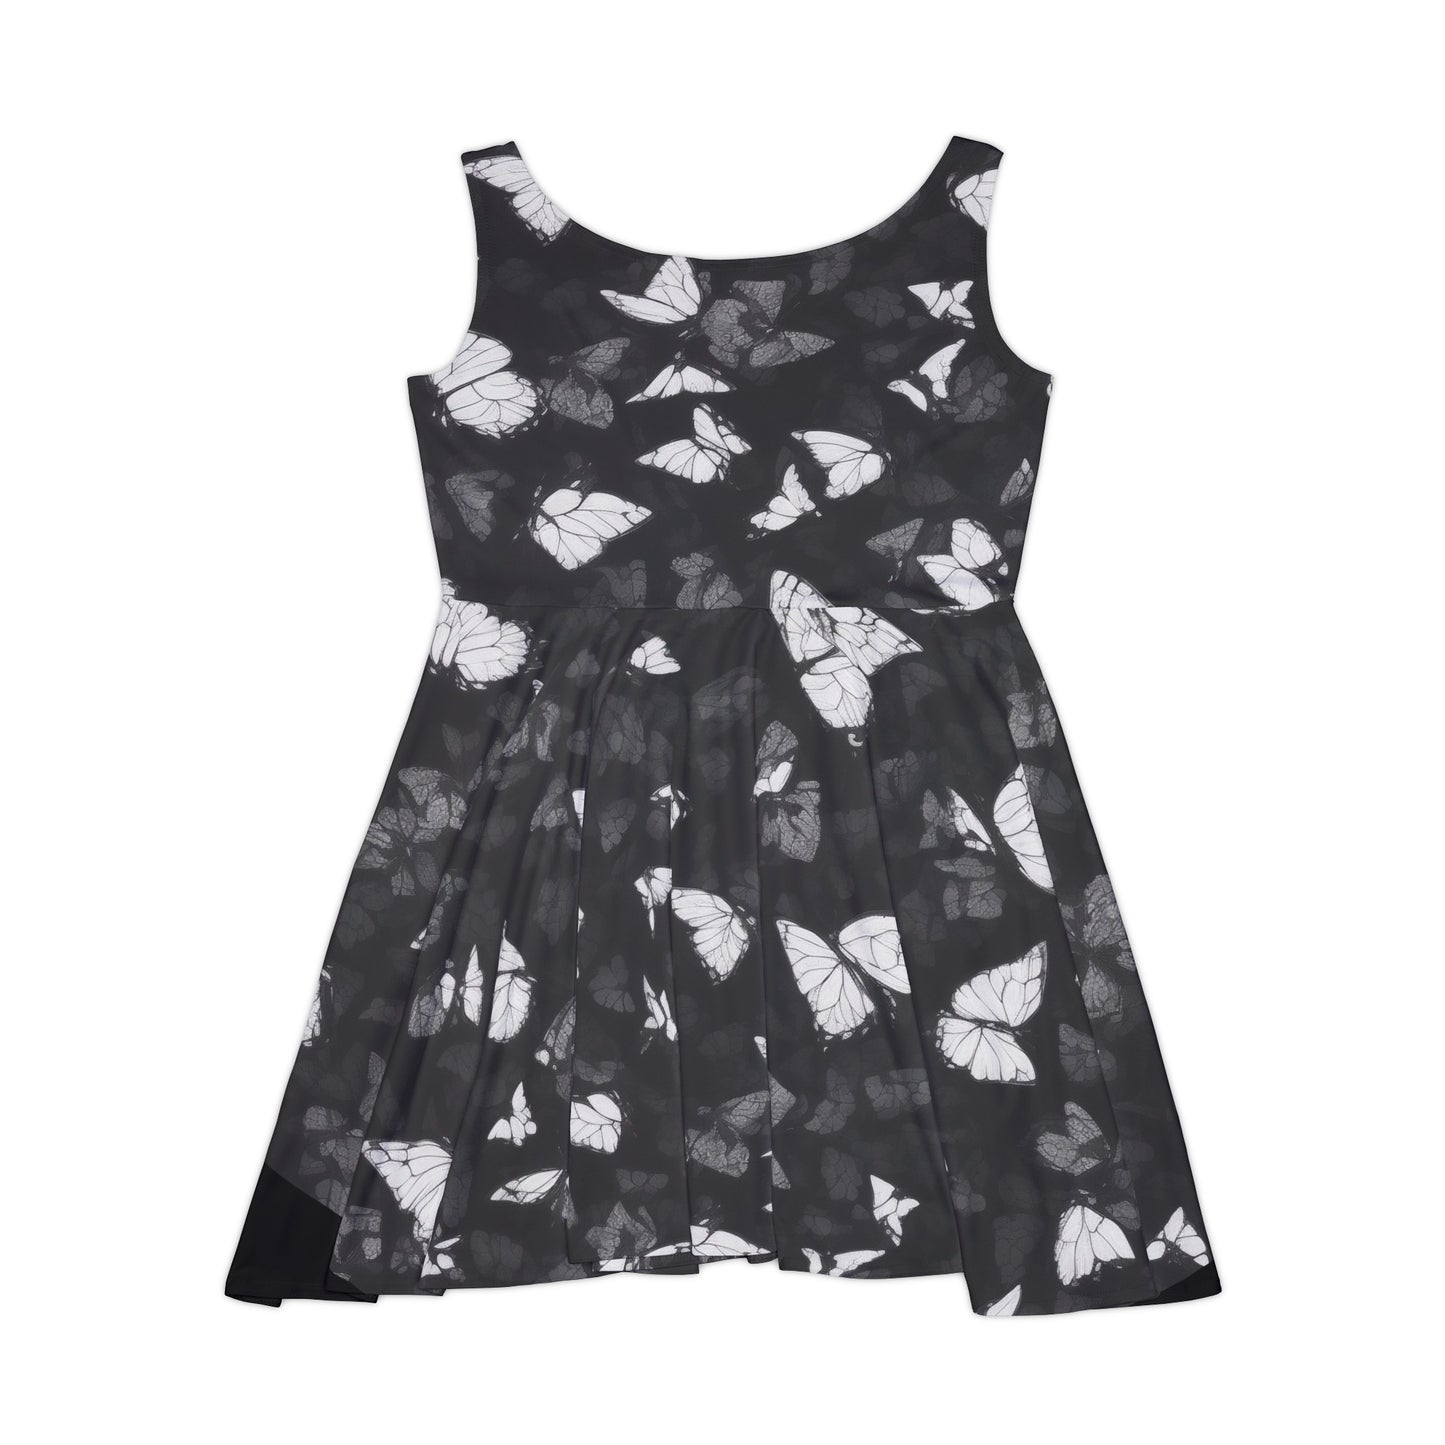 FlutterFit: Monochrome Butterfly Fitness Dress